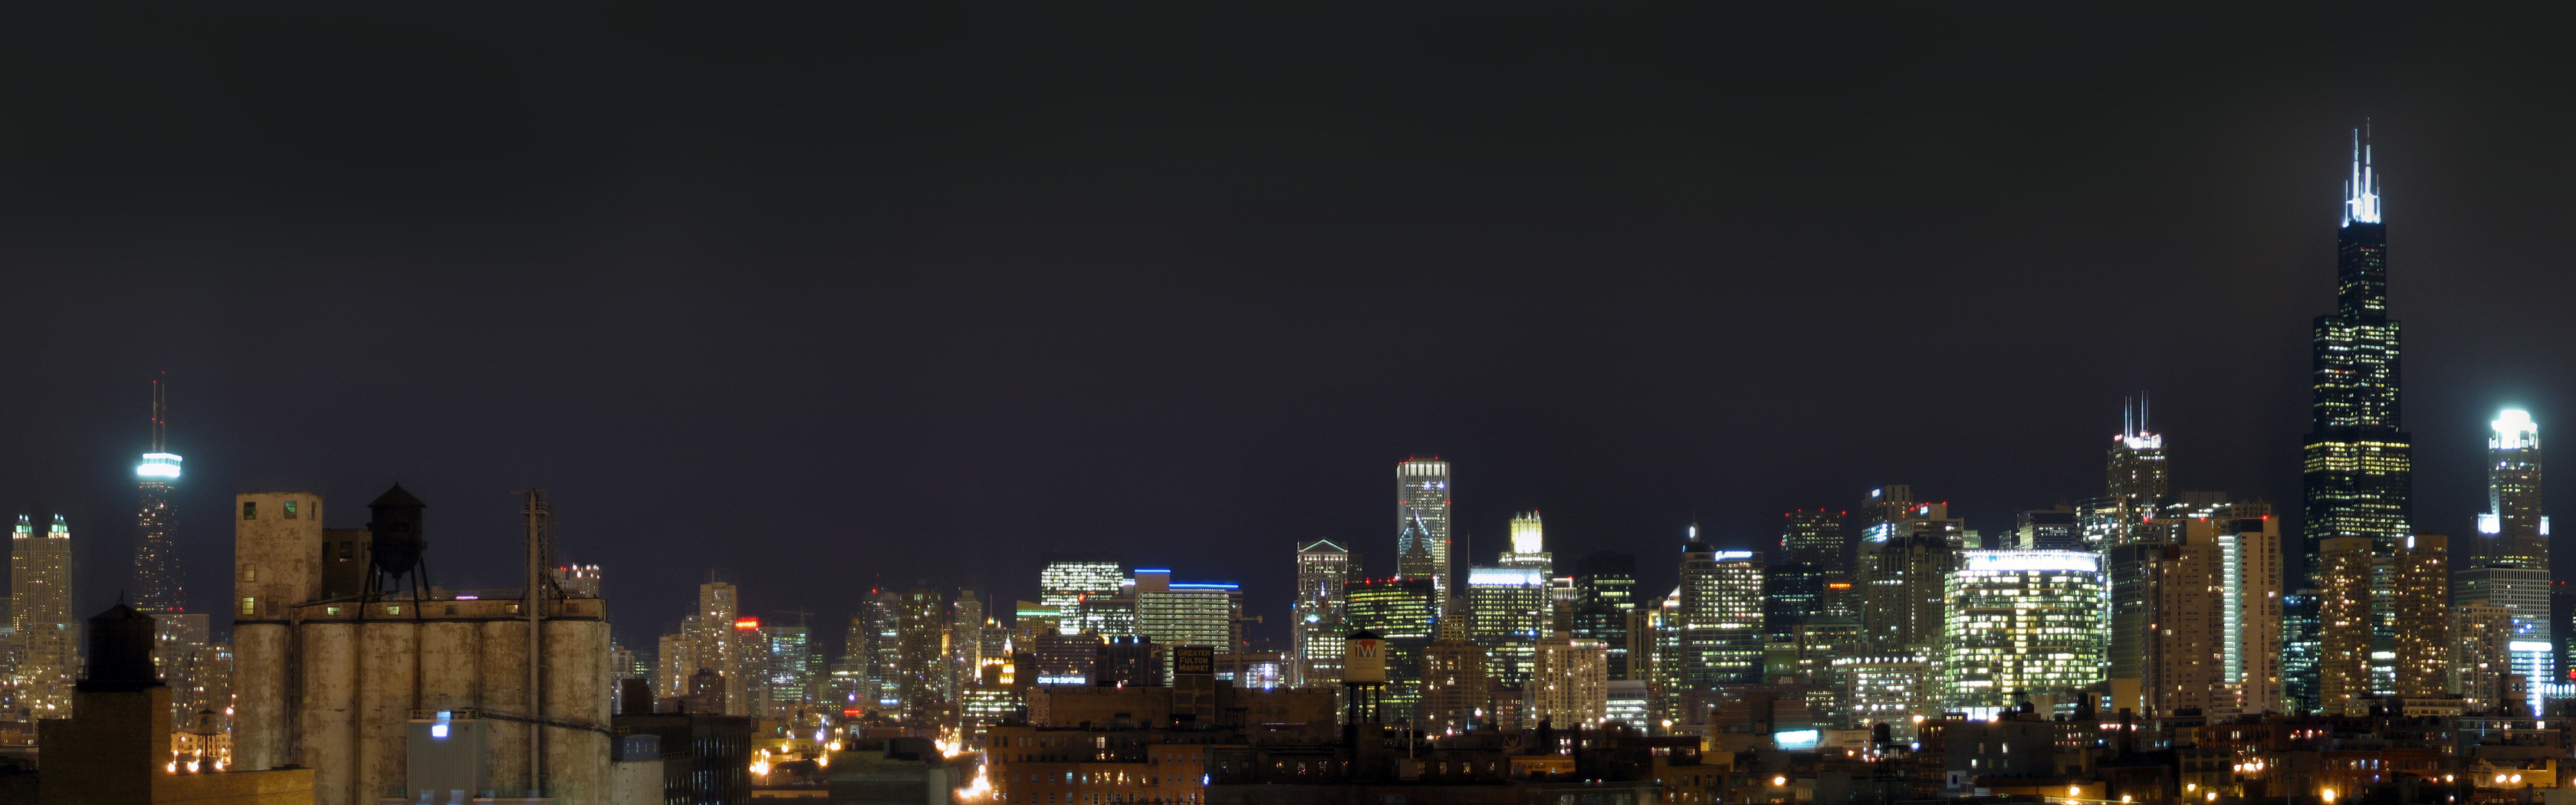 fond d'écran 3360x1050,paysage urbain,ville,zone métropolitaine,nuit,horizon